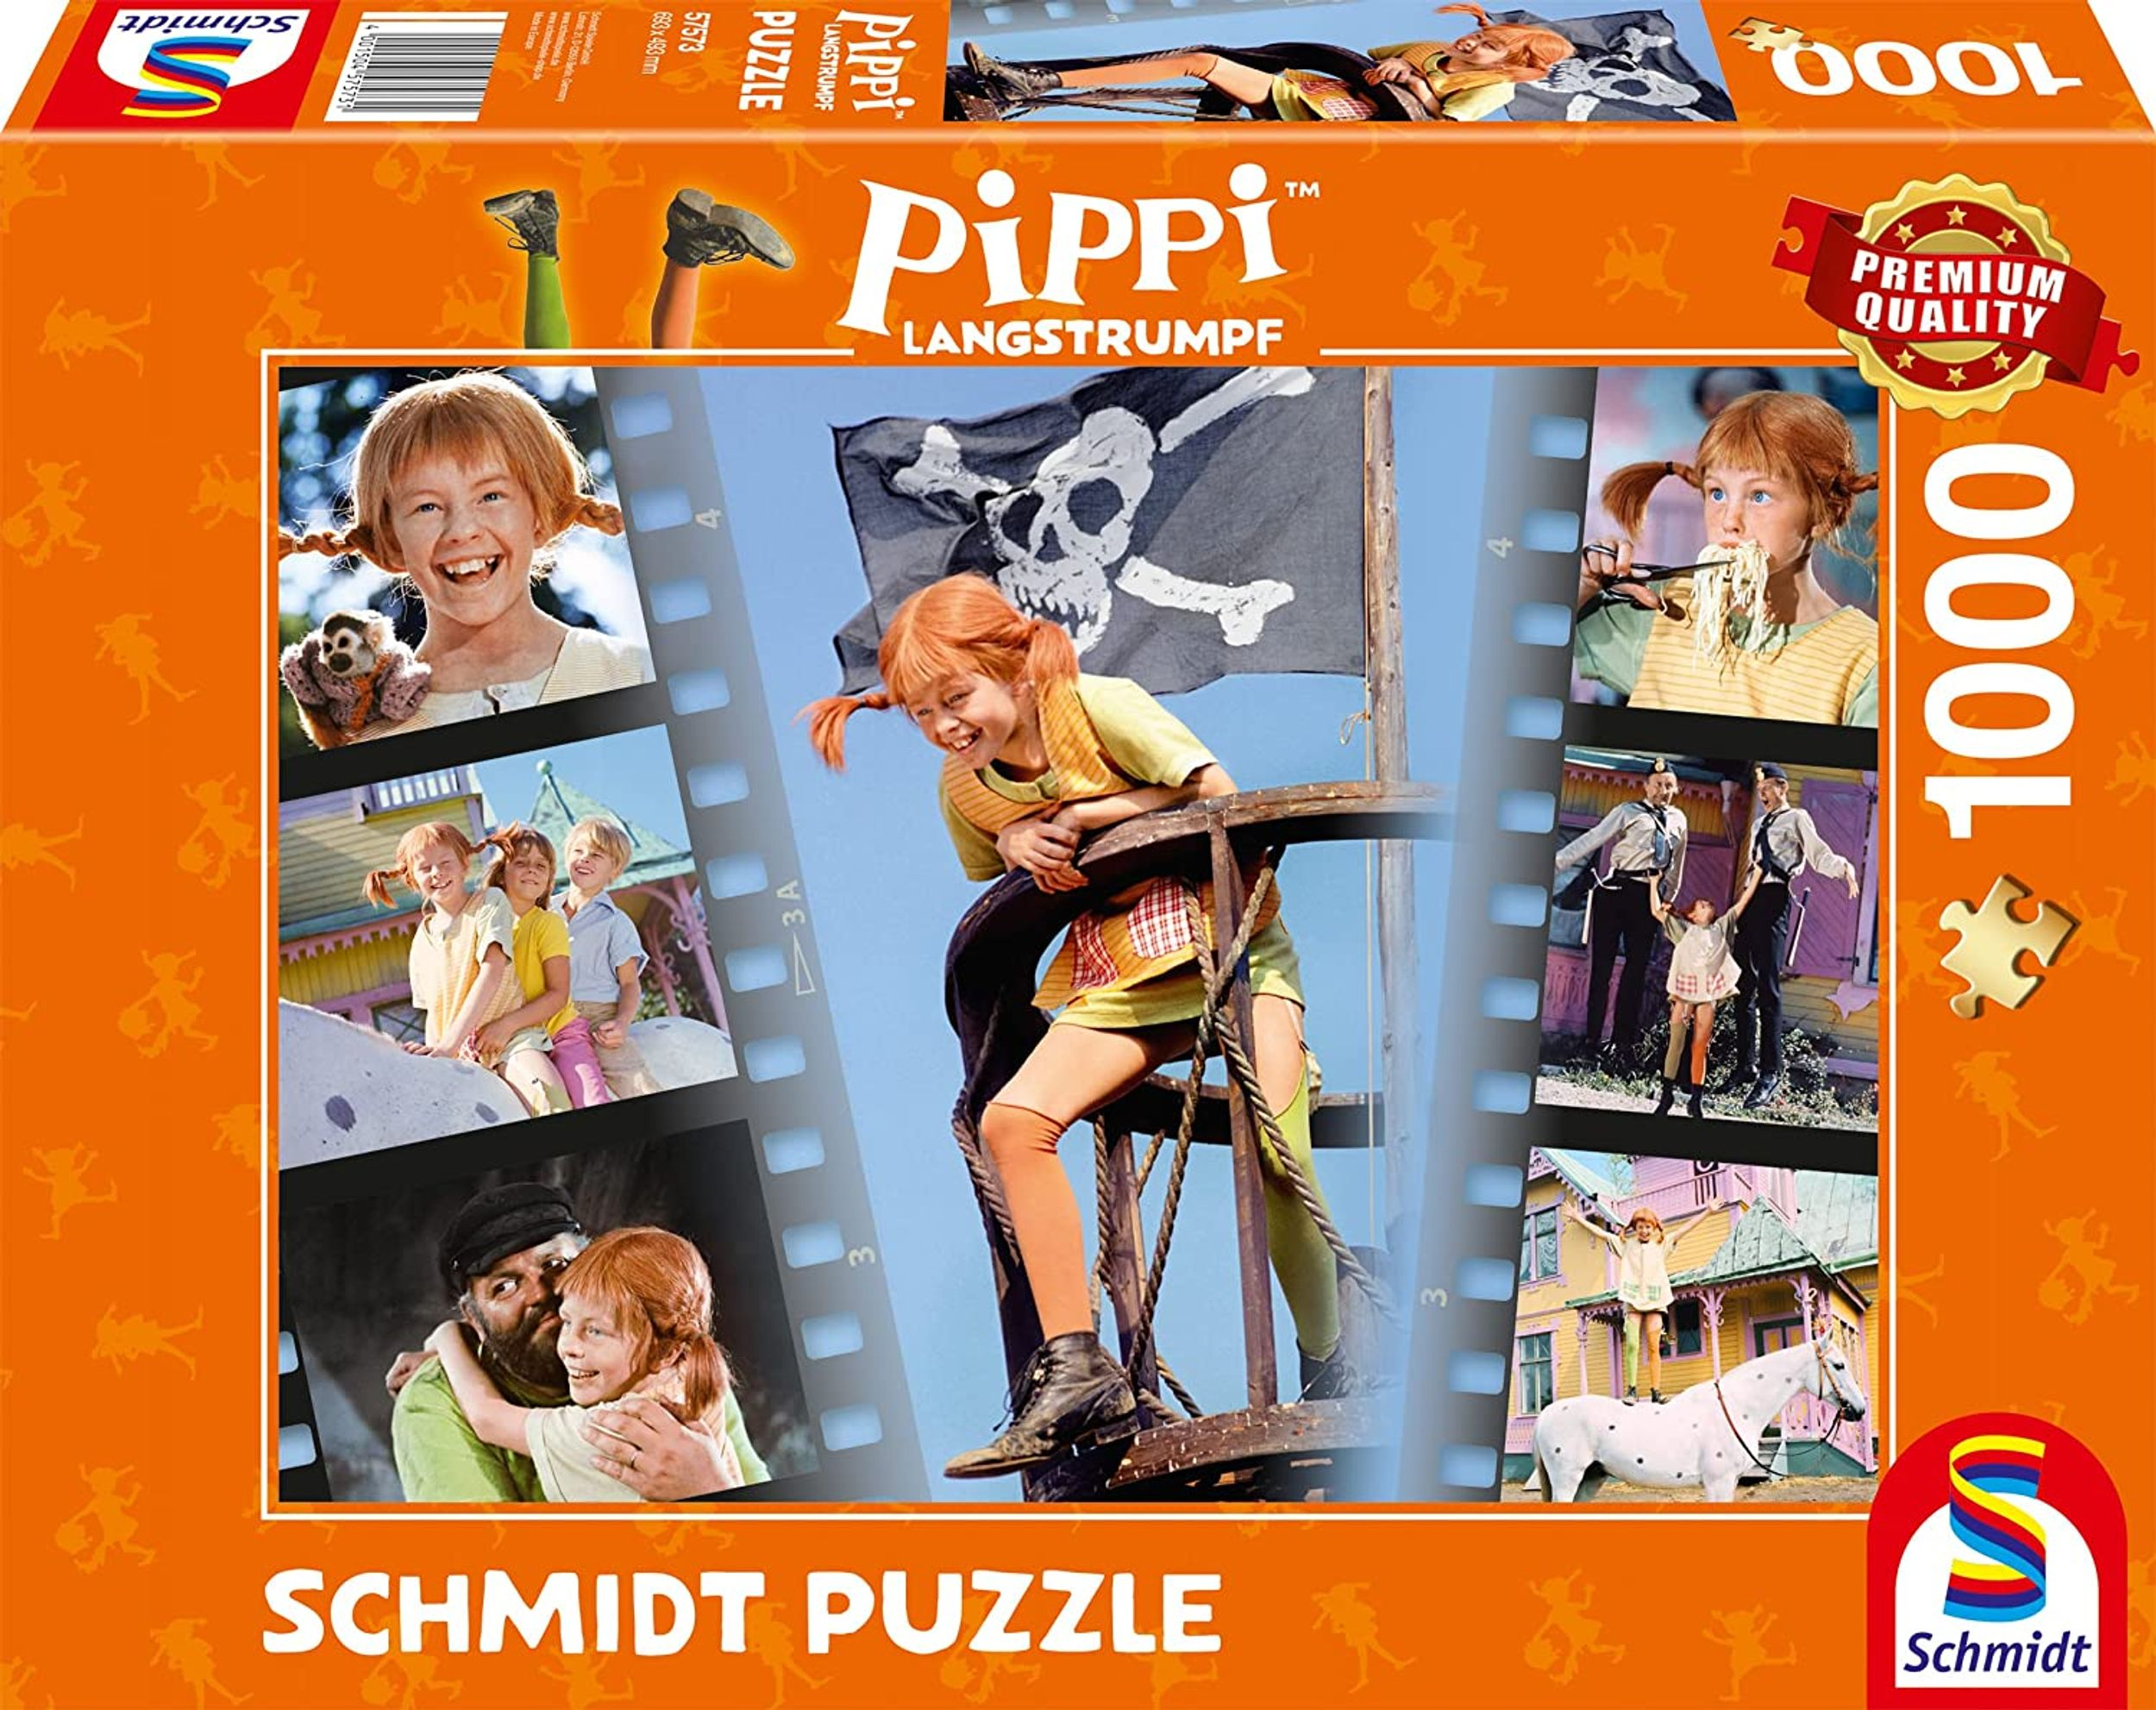 SCHMIDT SPIELE Pippi wunderbar Puzzle frech - wild und Langstrumpf Sei